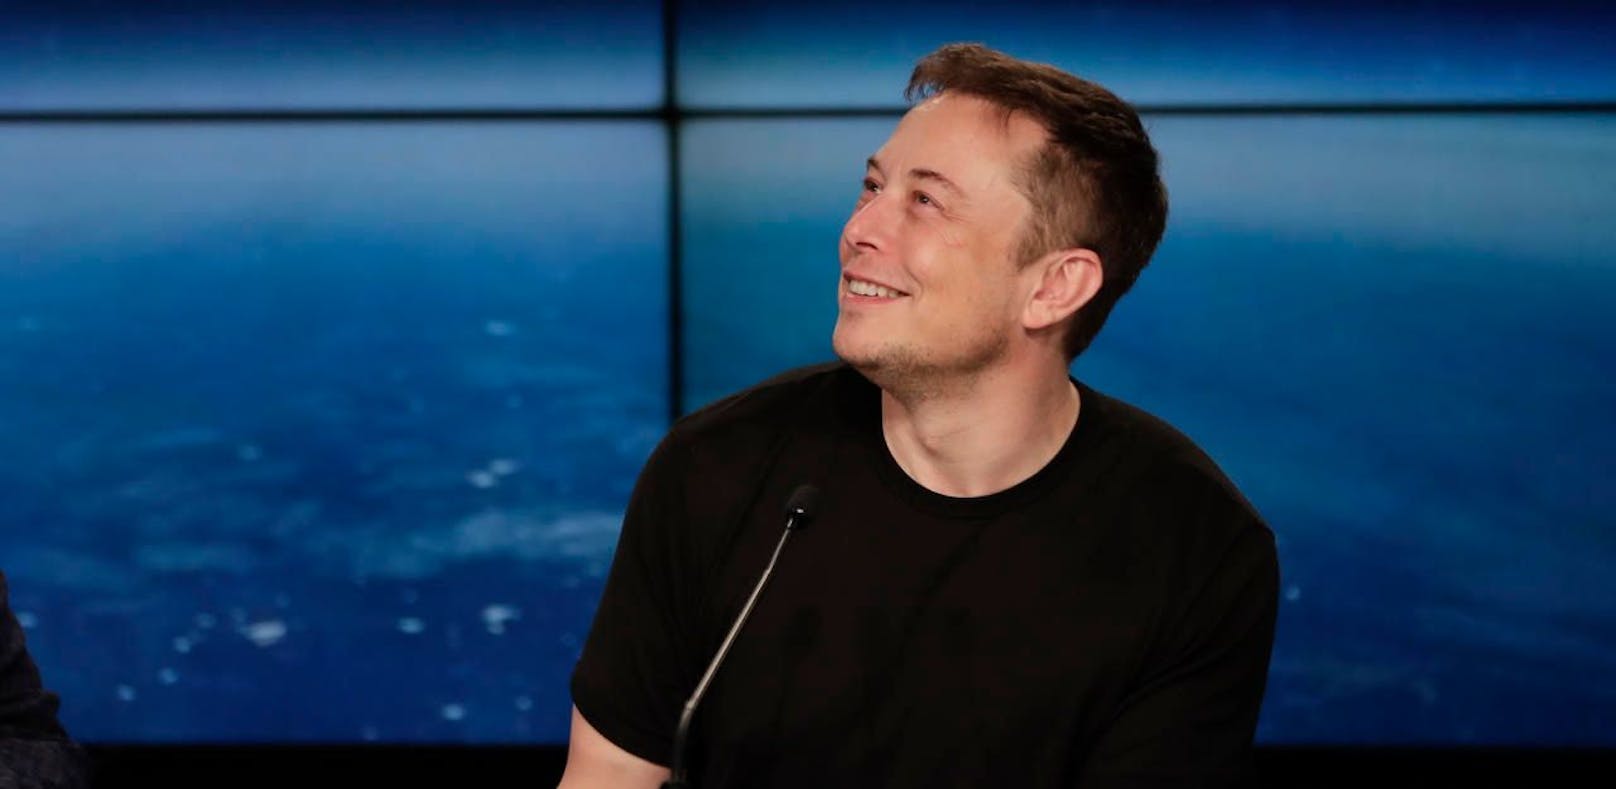 Elon Musk, Gründer von Tesla und SpaceX, löscht die Facebook-Seiten seiner Unternehmen